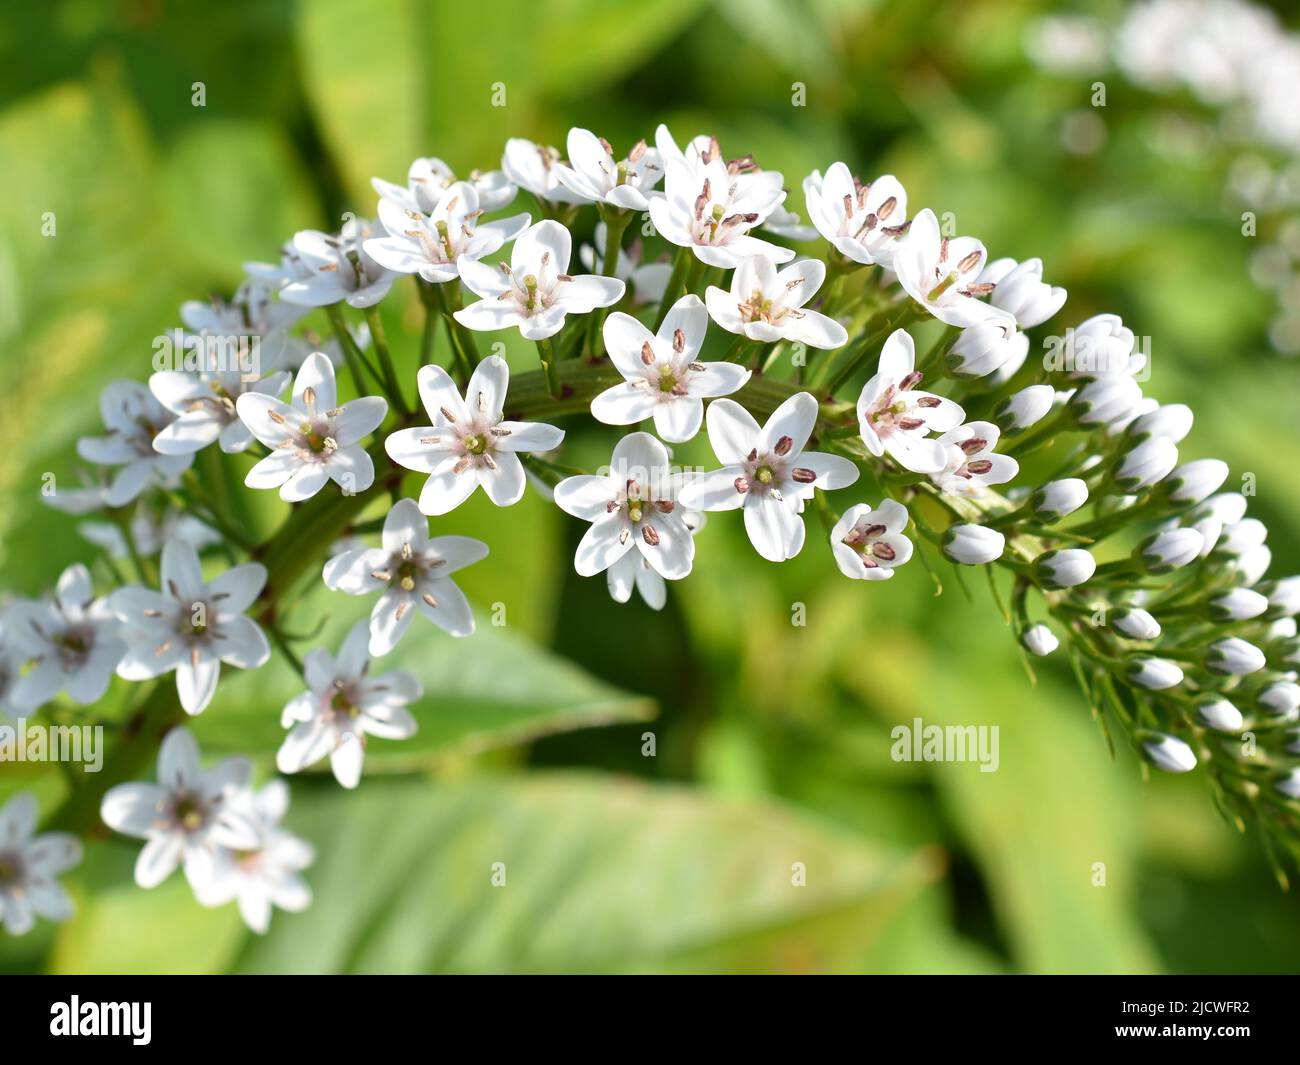 Gooseneck loosestrife Lysimachia clethroides white flowers Stock Photo